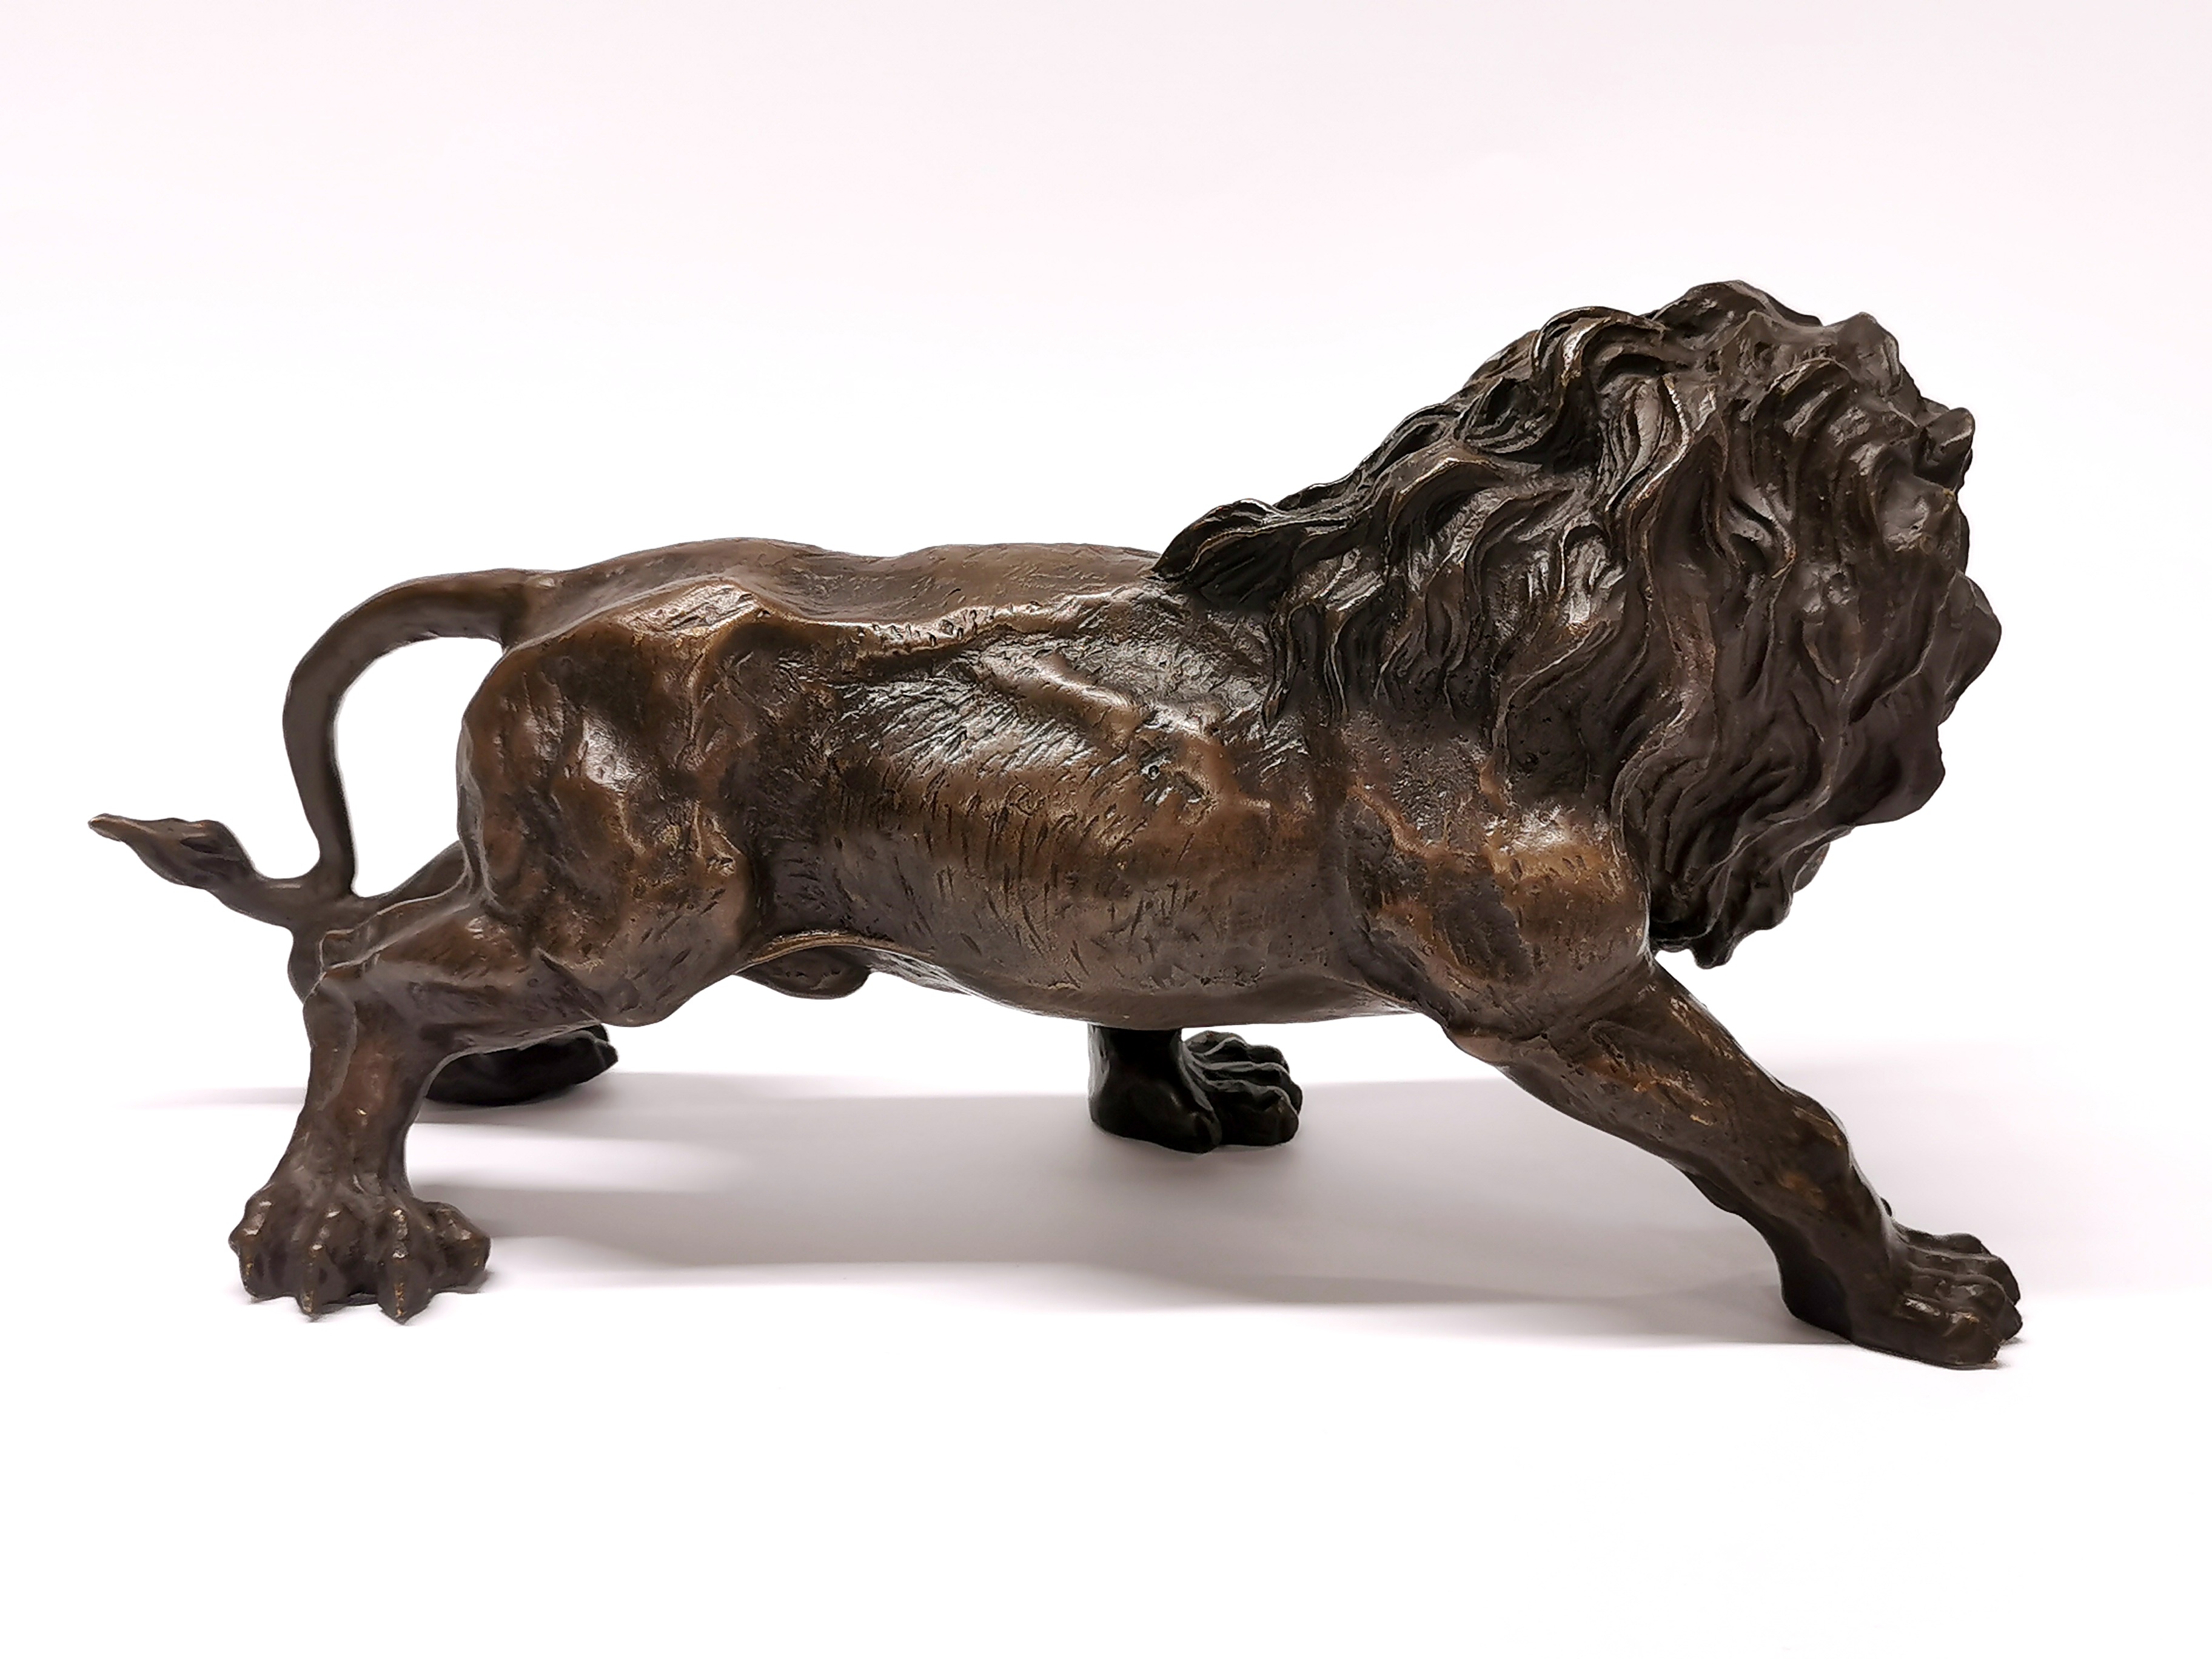 A cast bronze figure of a lion, H. 15cm, L. 30cm. - Image 2 of 3